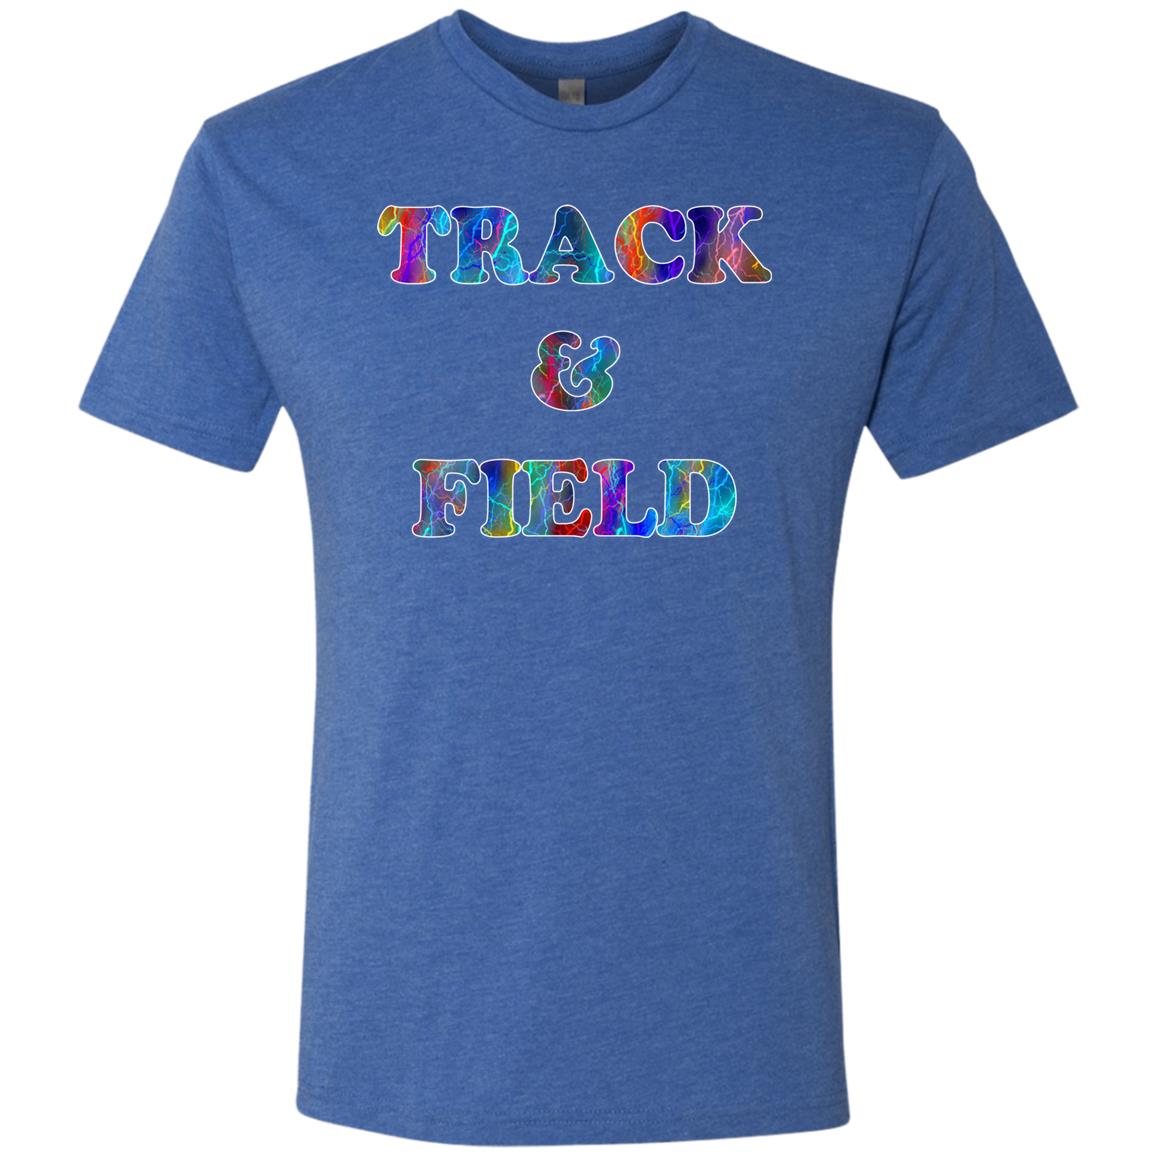 Track & Field Sport T-Shirt